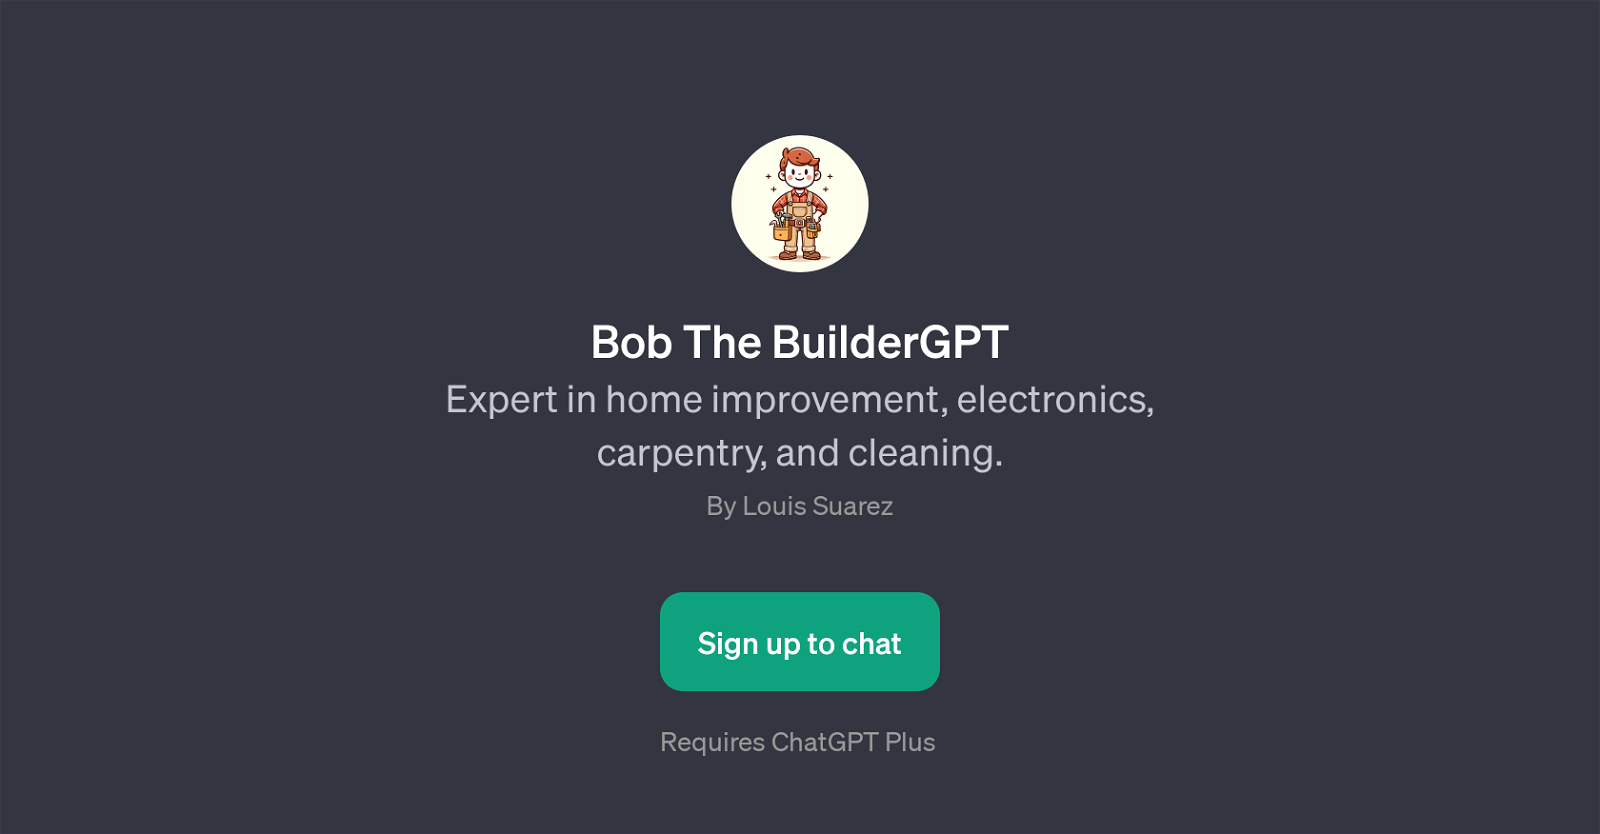 Bob The BuilderGPT website